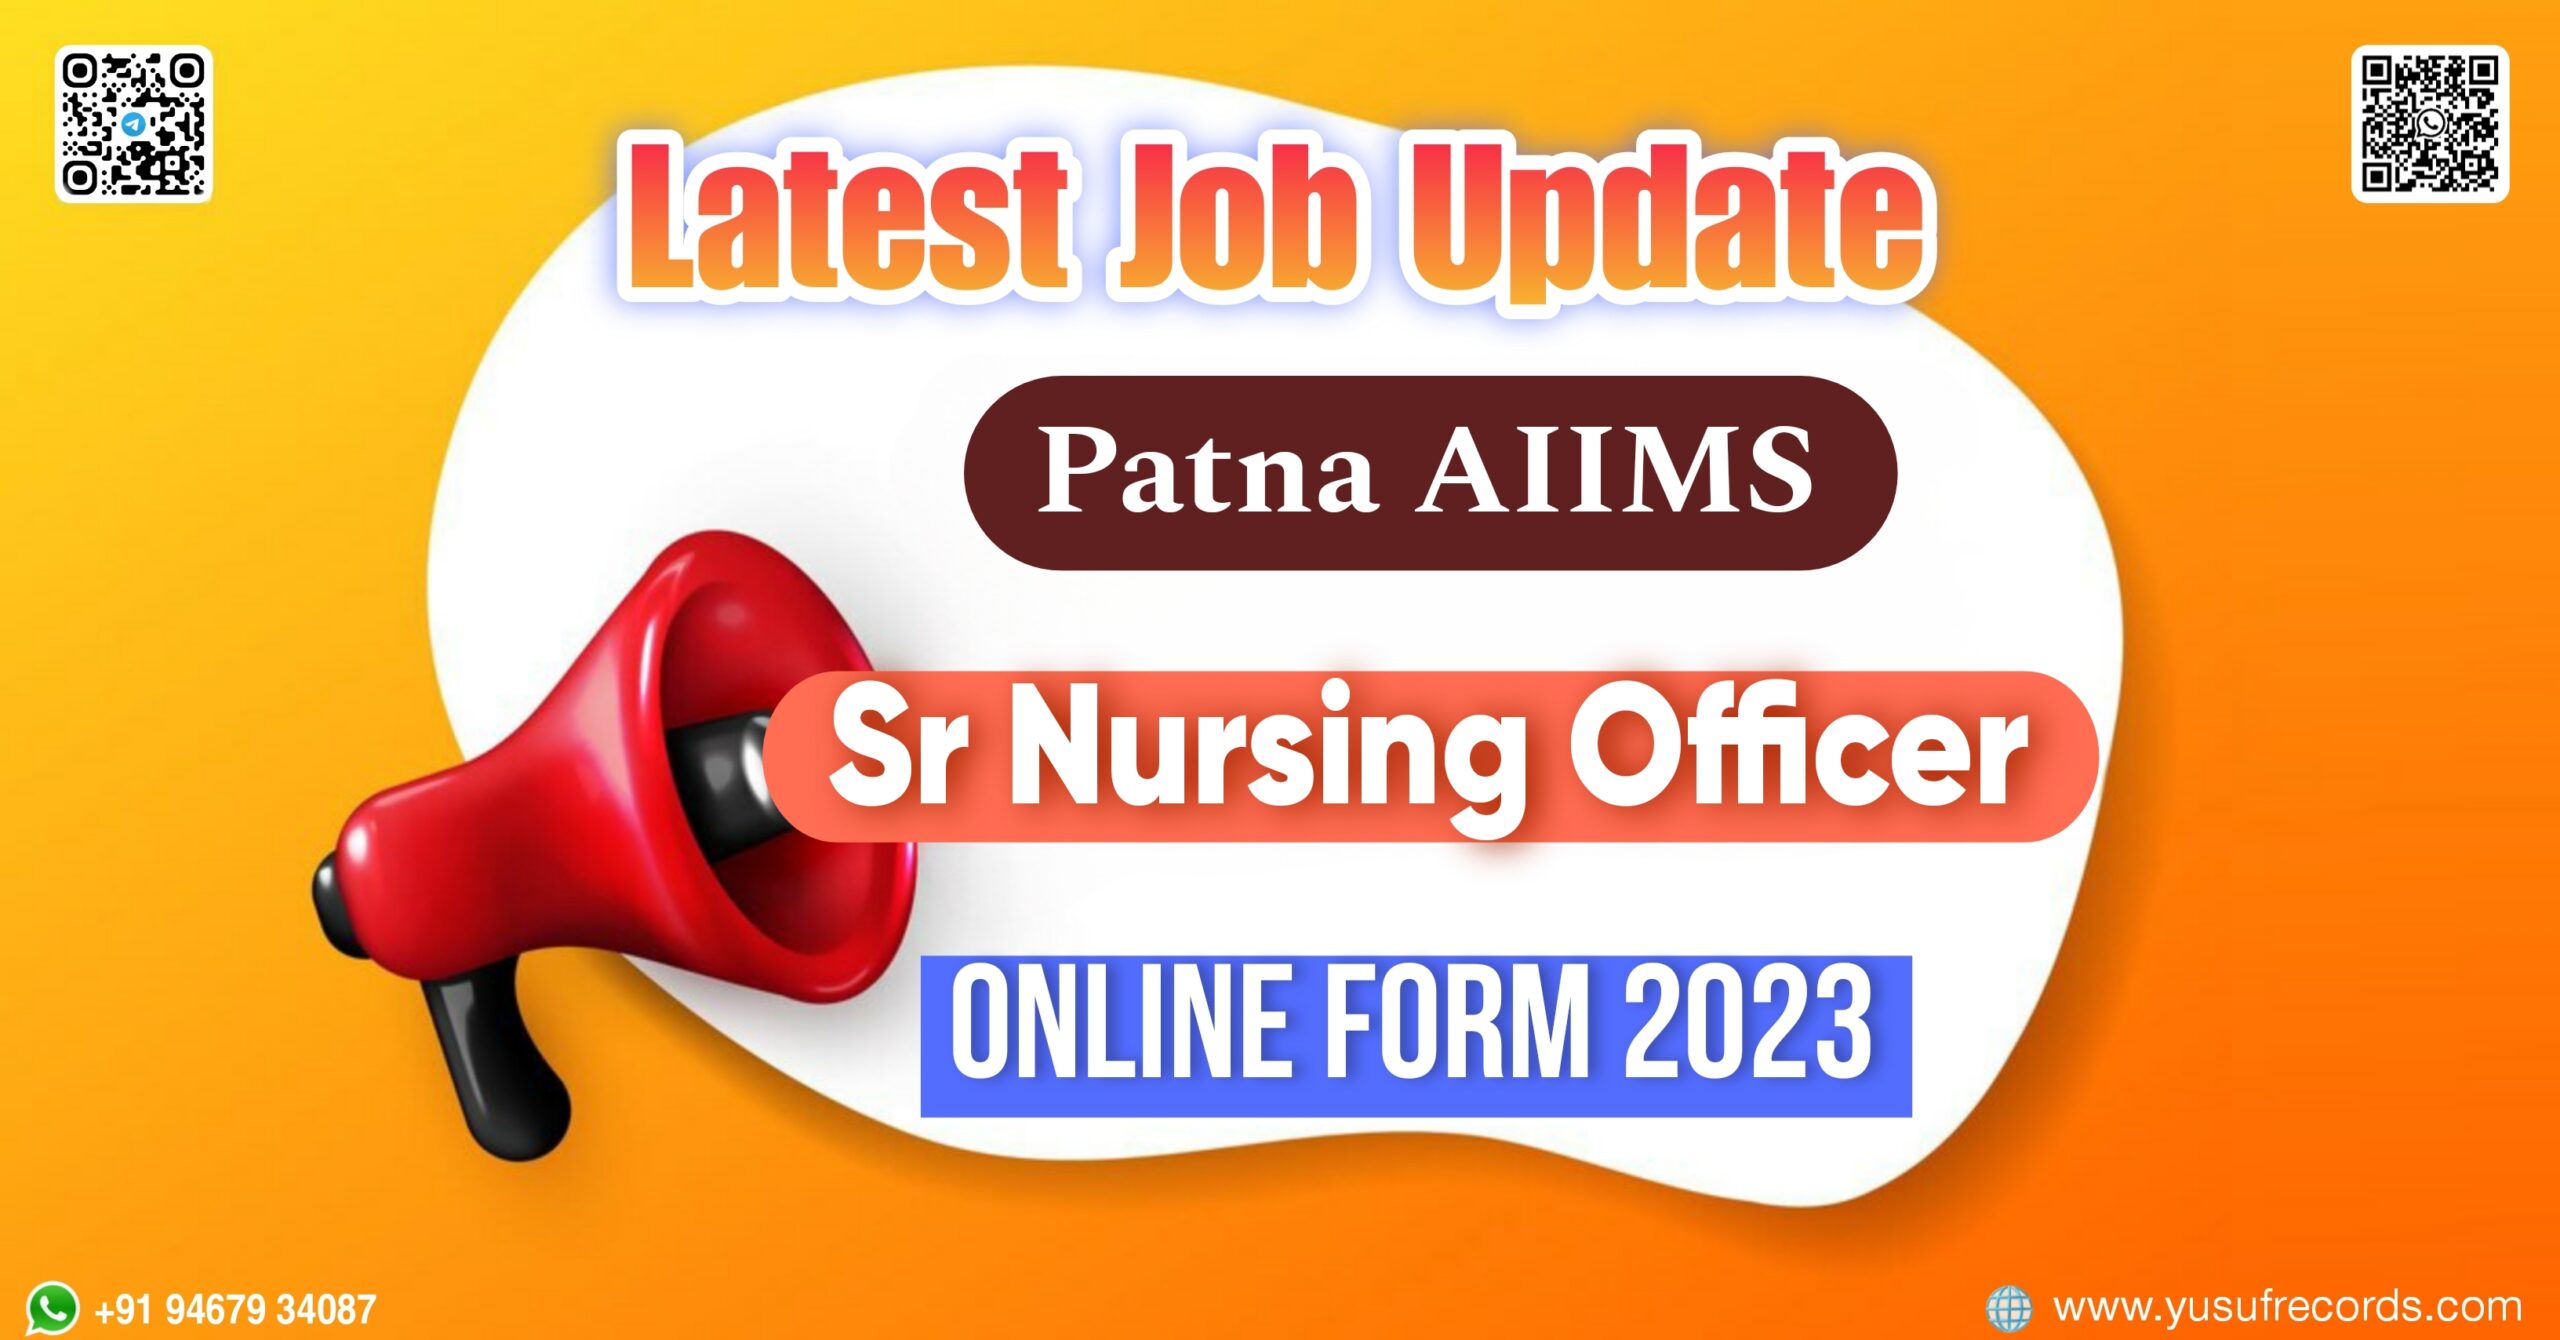 Patna AIIMS Sr Nursing Officer Online Form yusufrecords.com